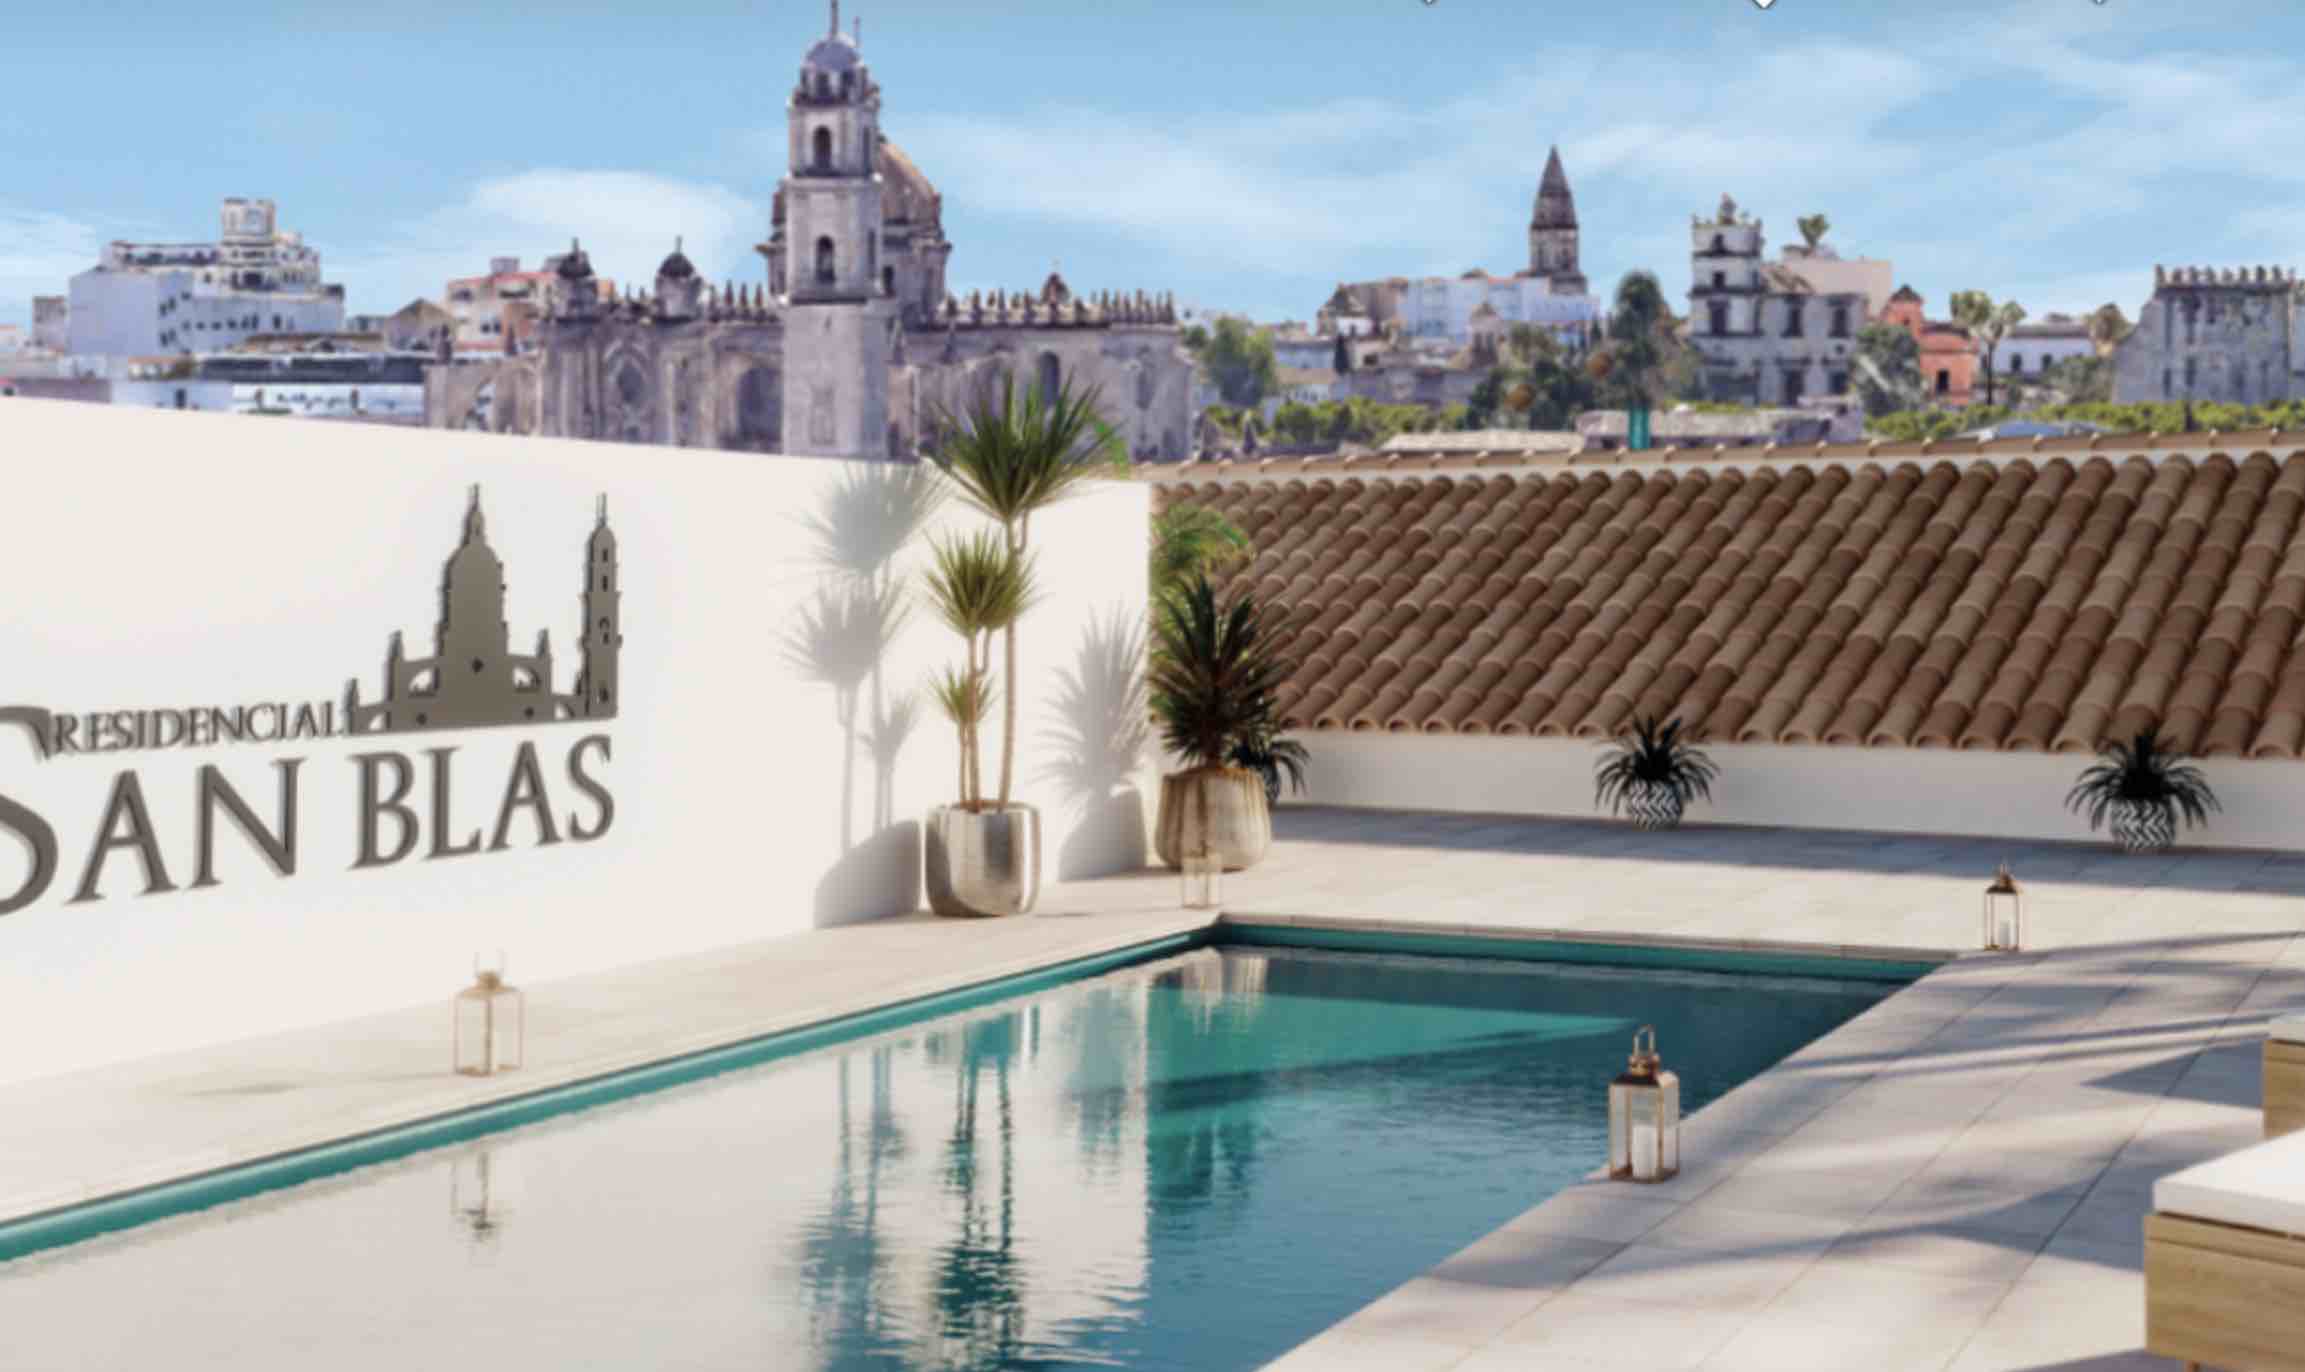 Recreación virtual de la piscina en Residencial San Blas, con la Catedral de Jerez al fondo.